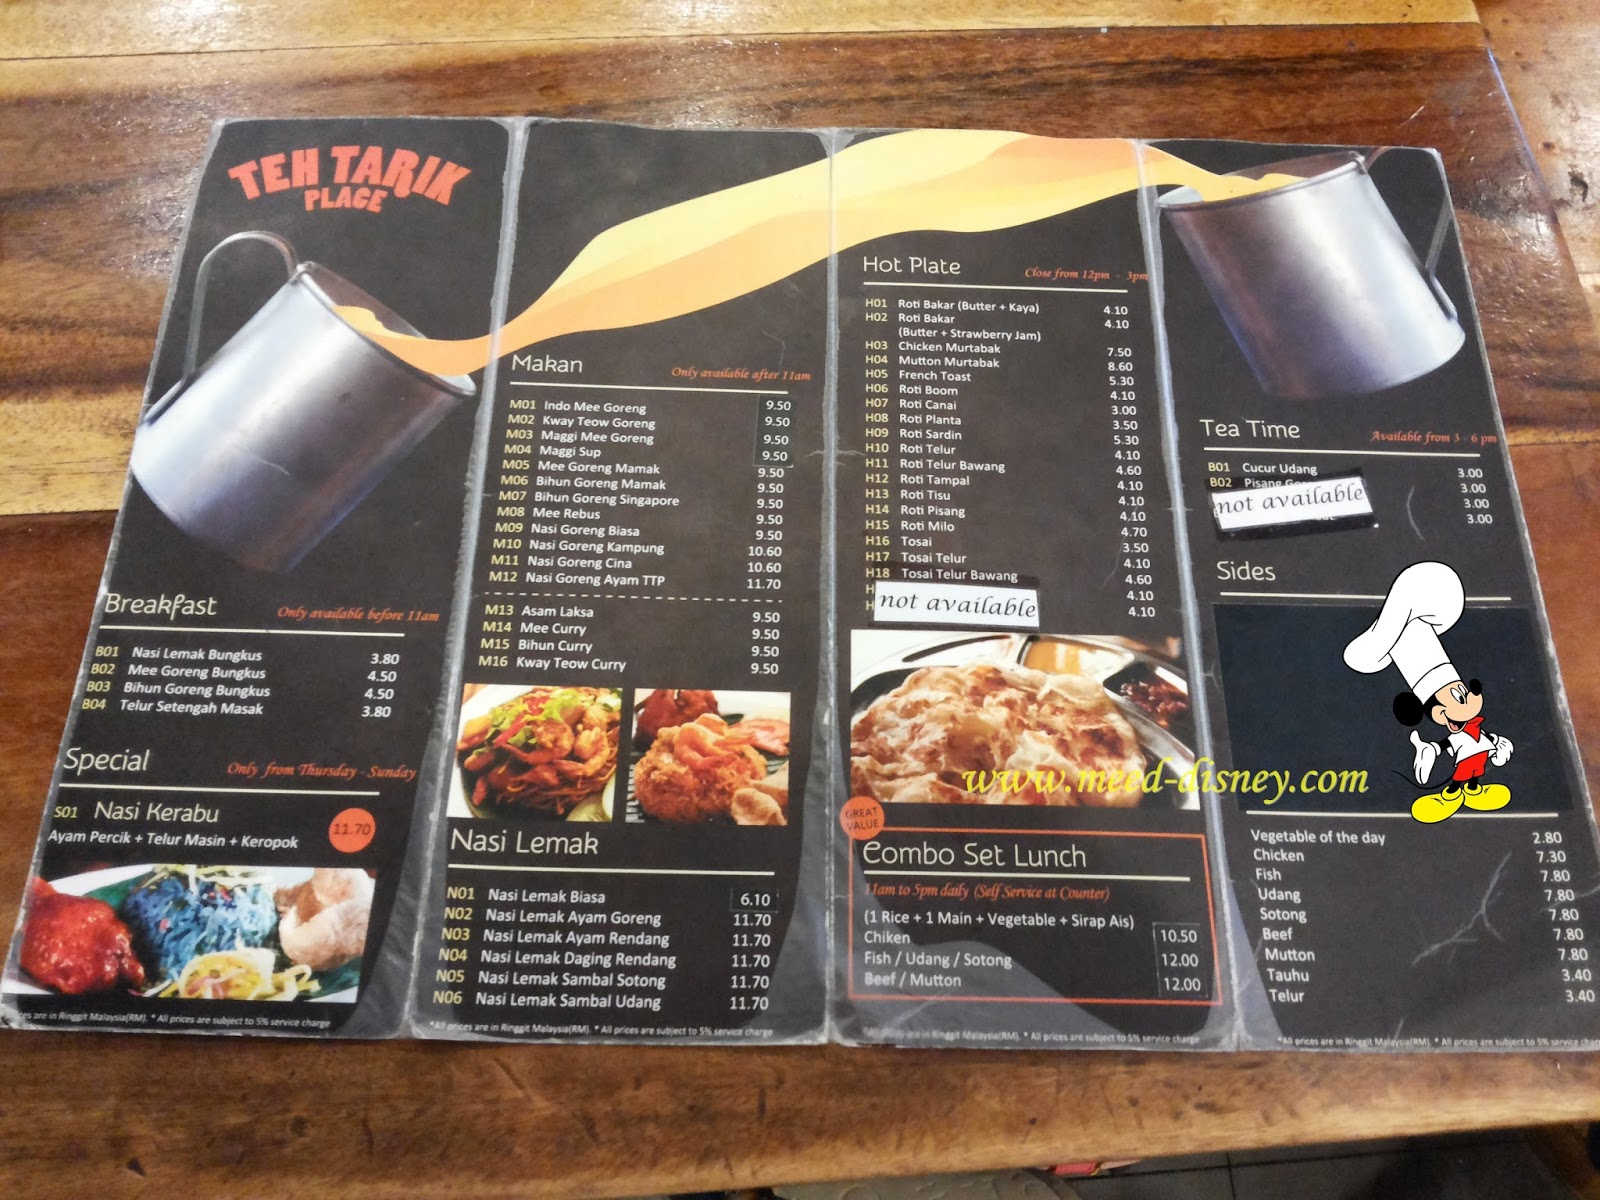 teh tarik place menu